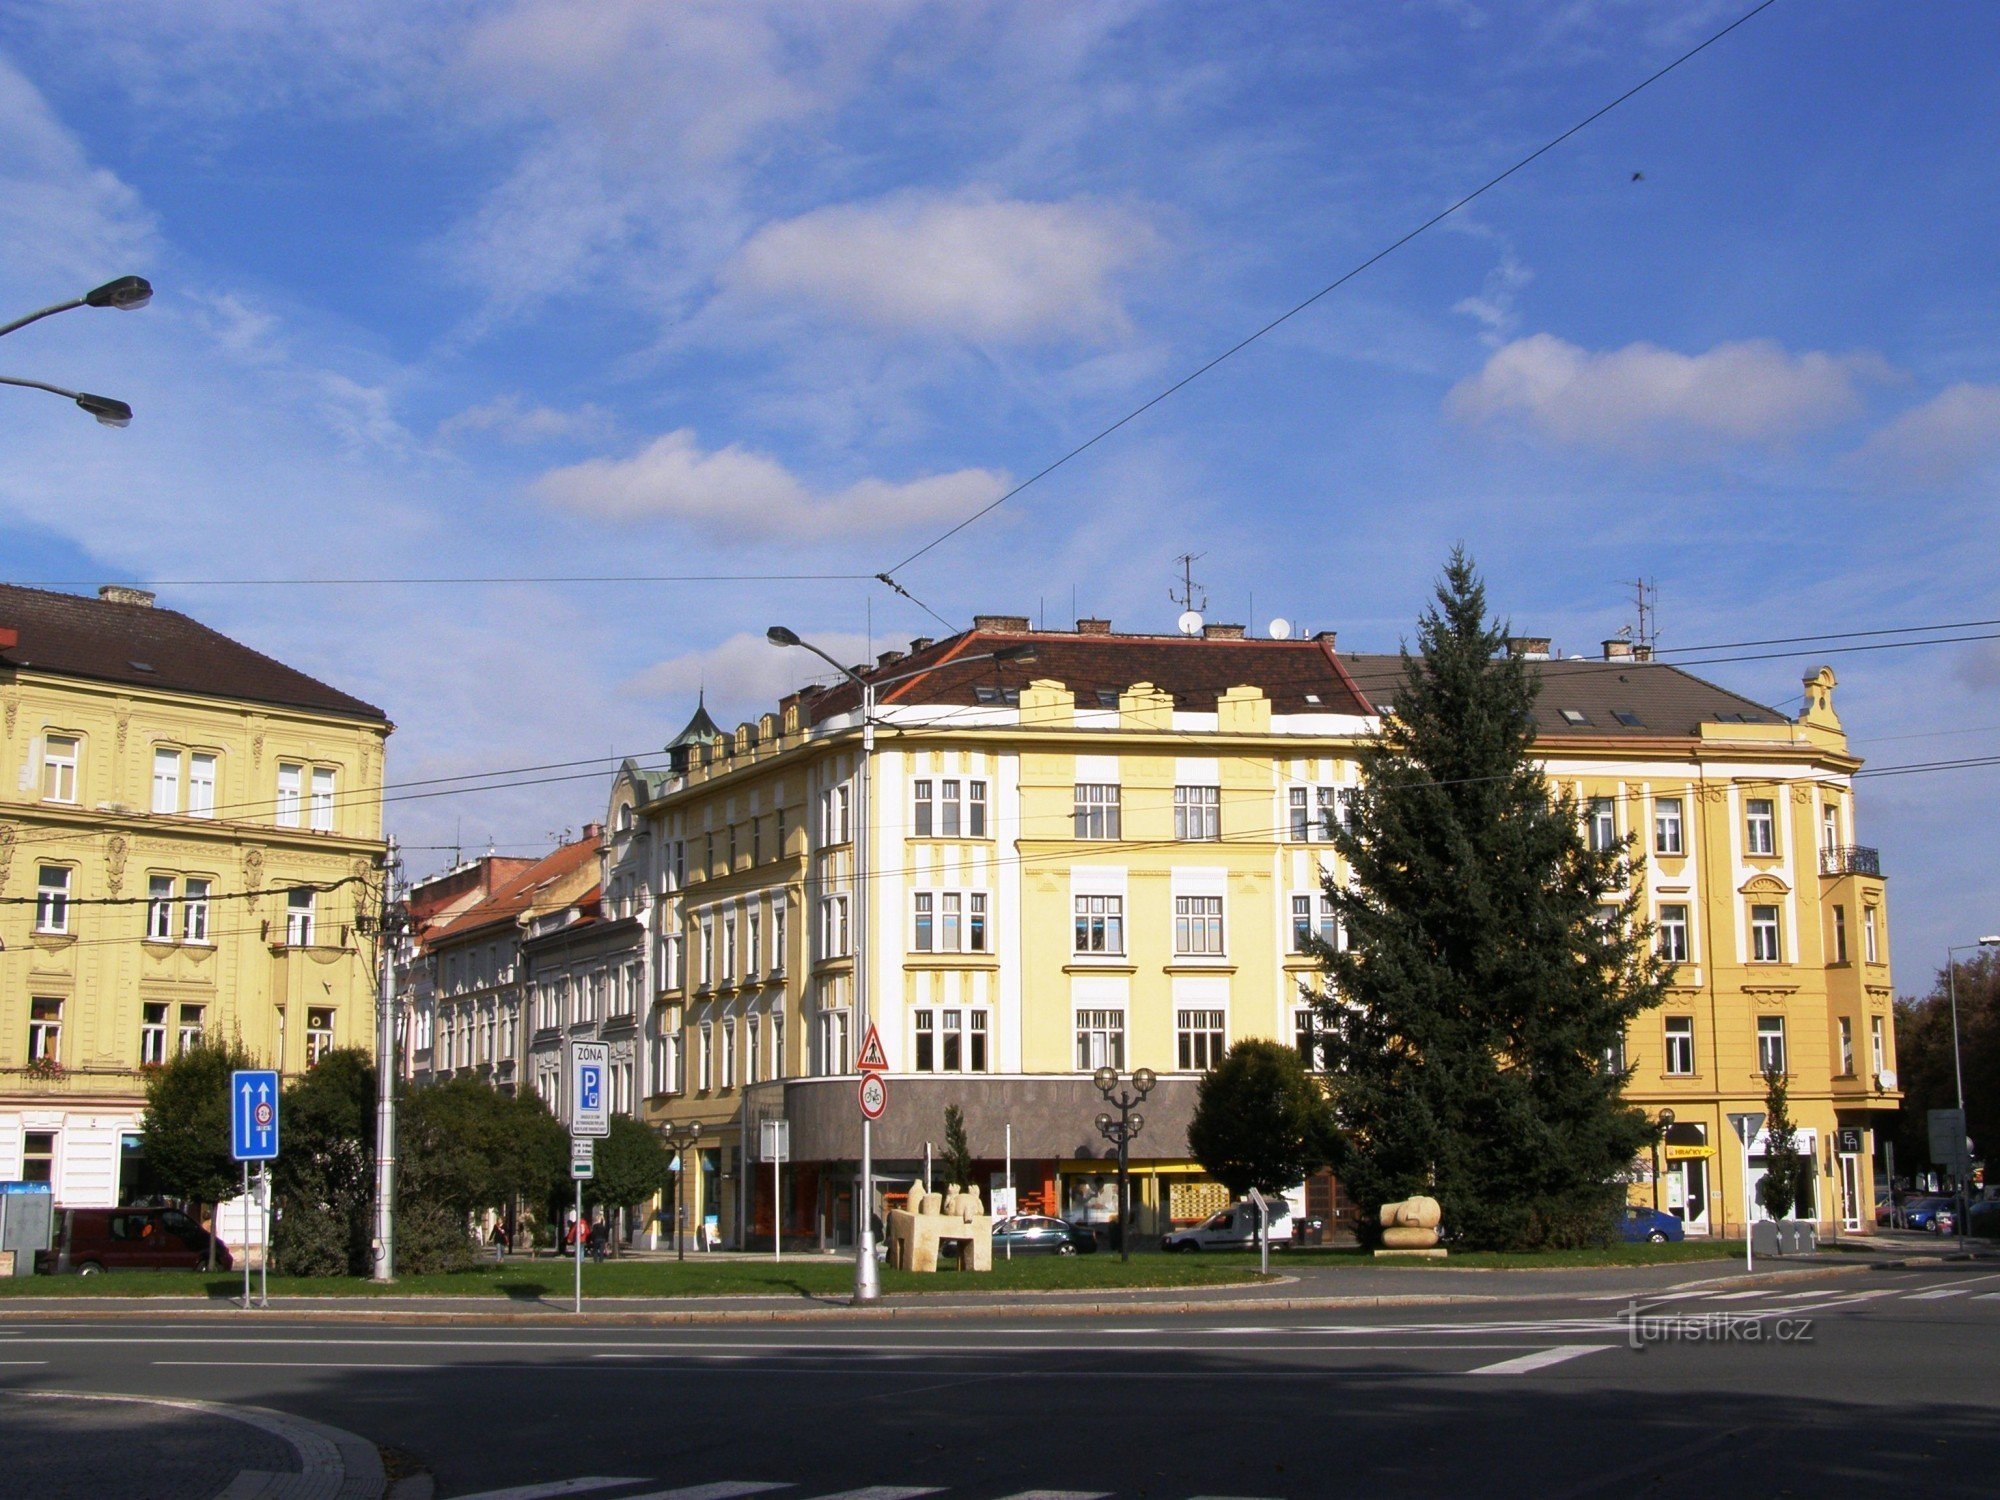 Hradec Králové - Trg slobode